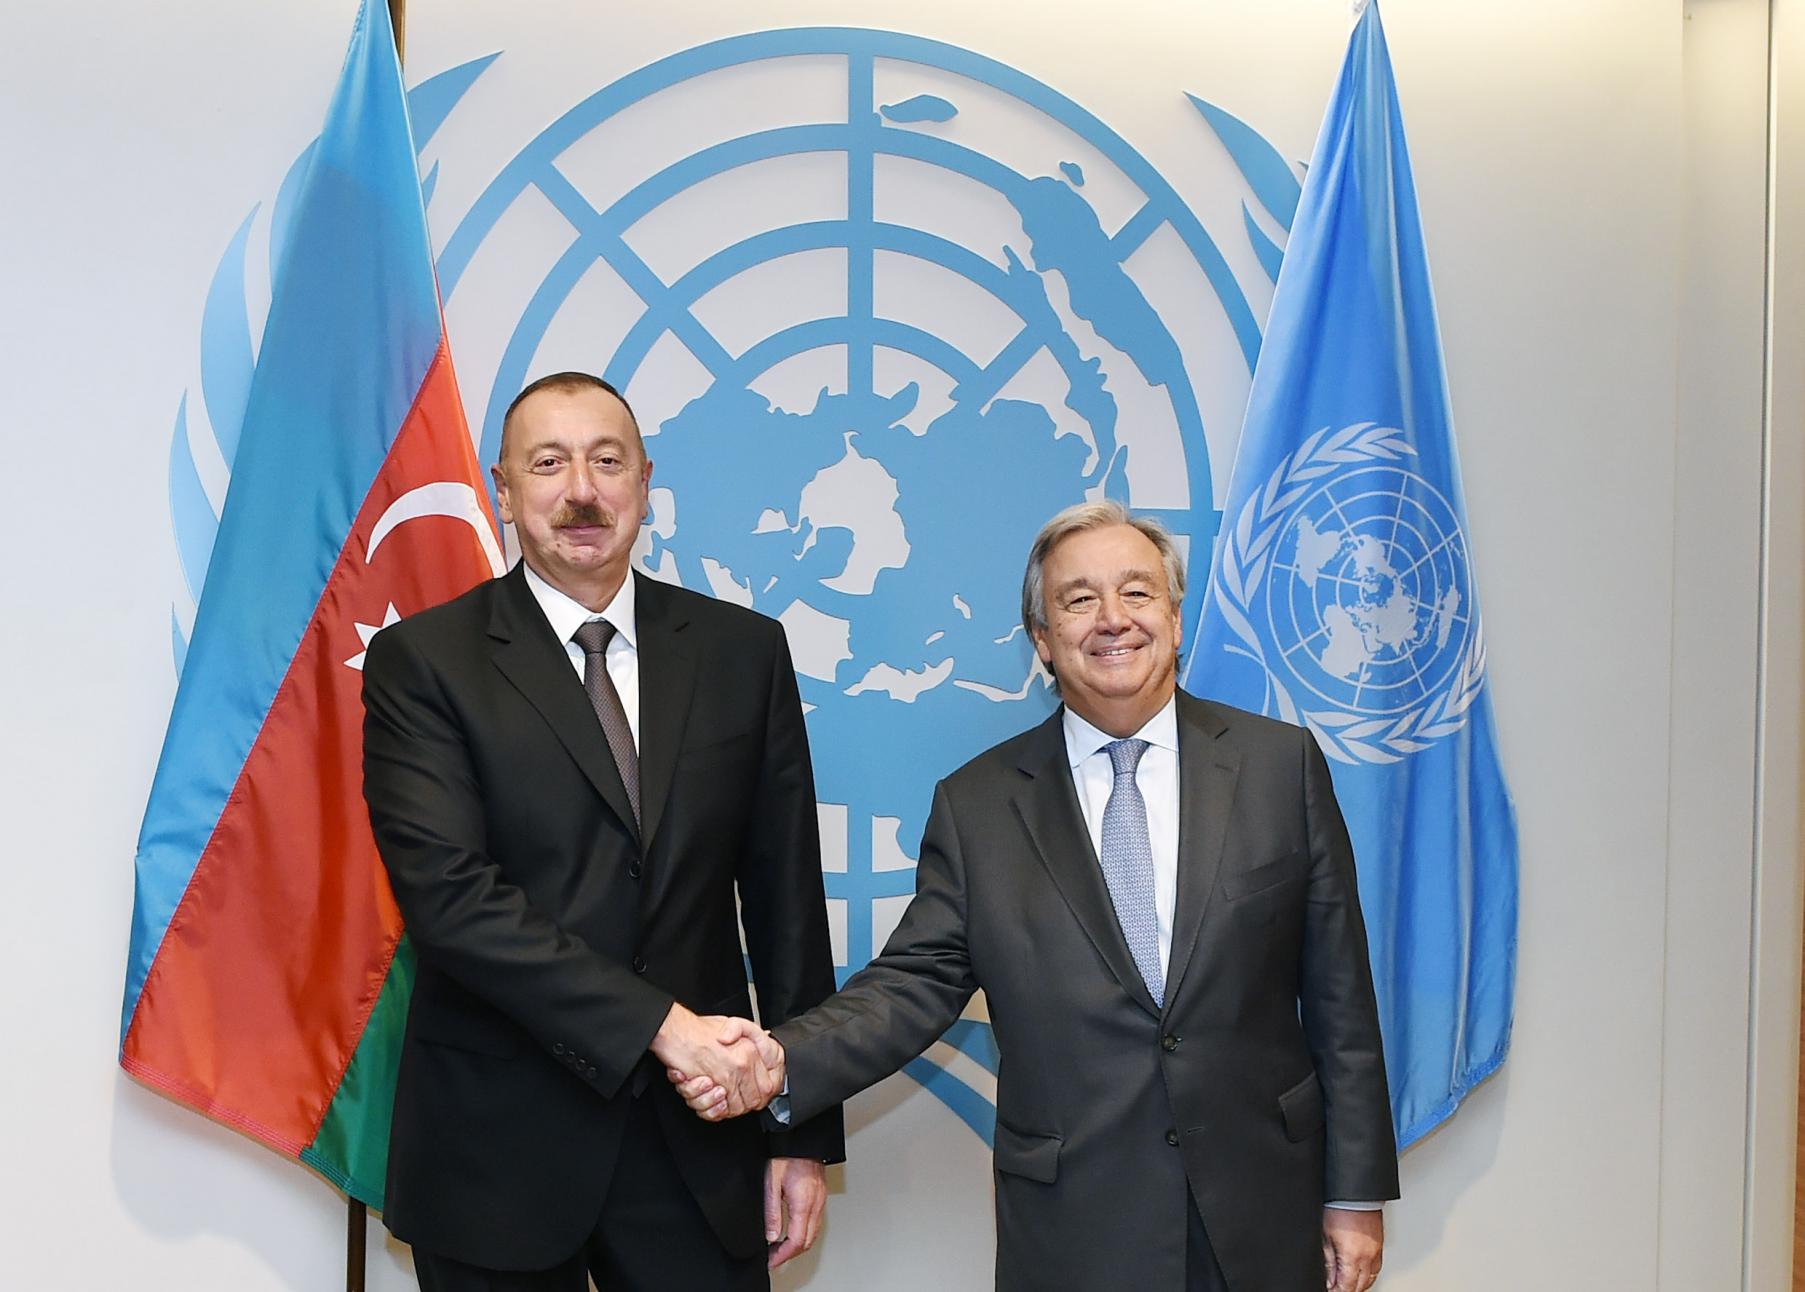 Antonio Guterres congratulates Ilham Aliyev